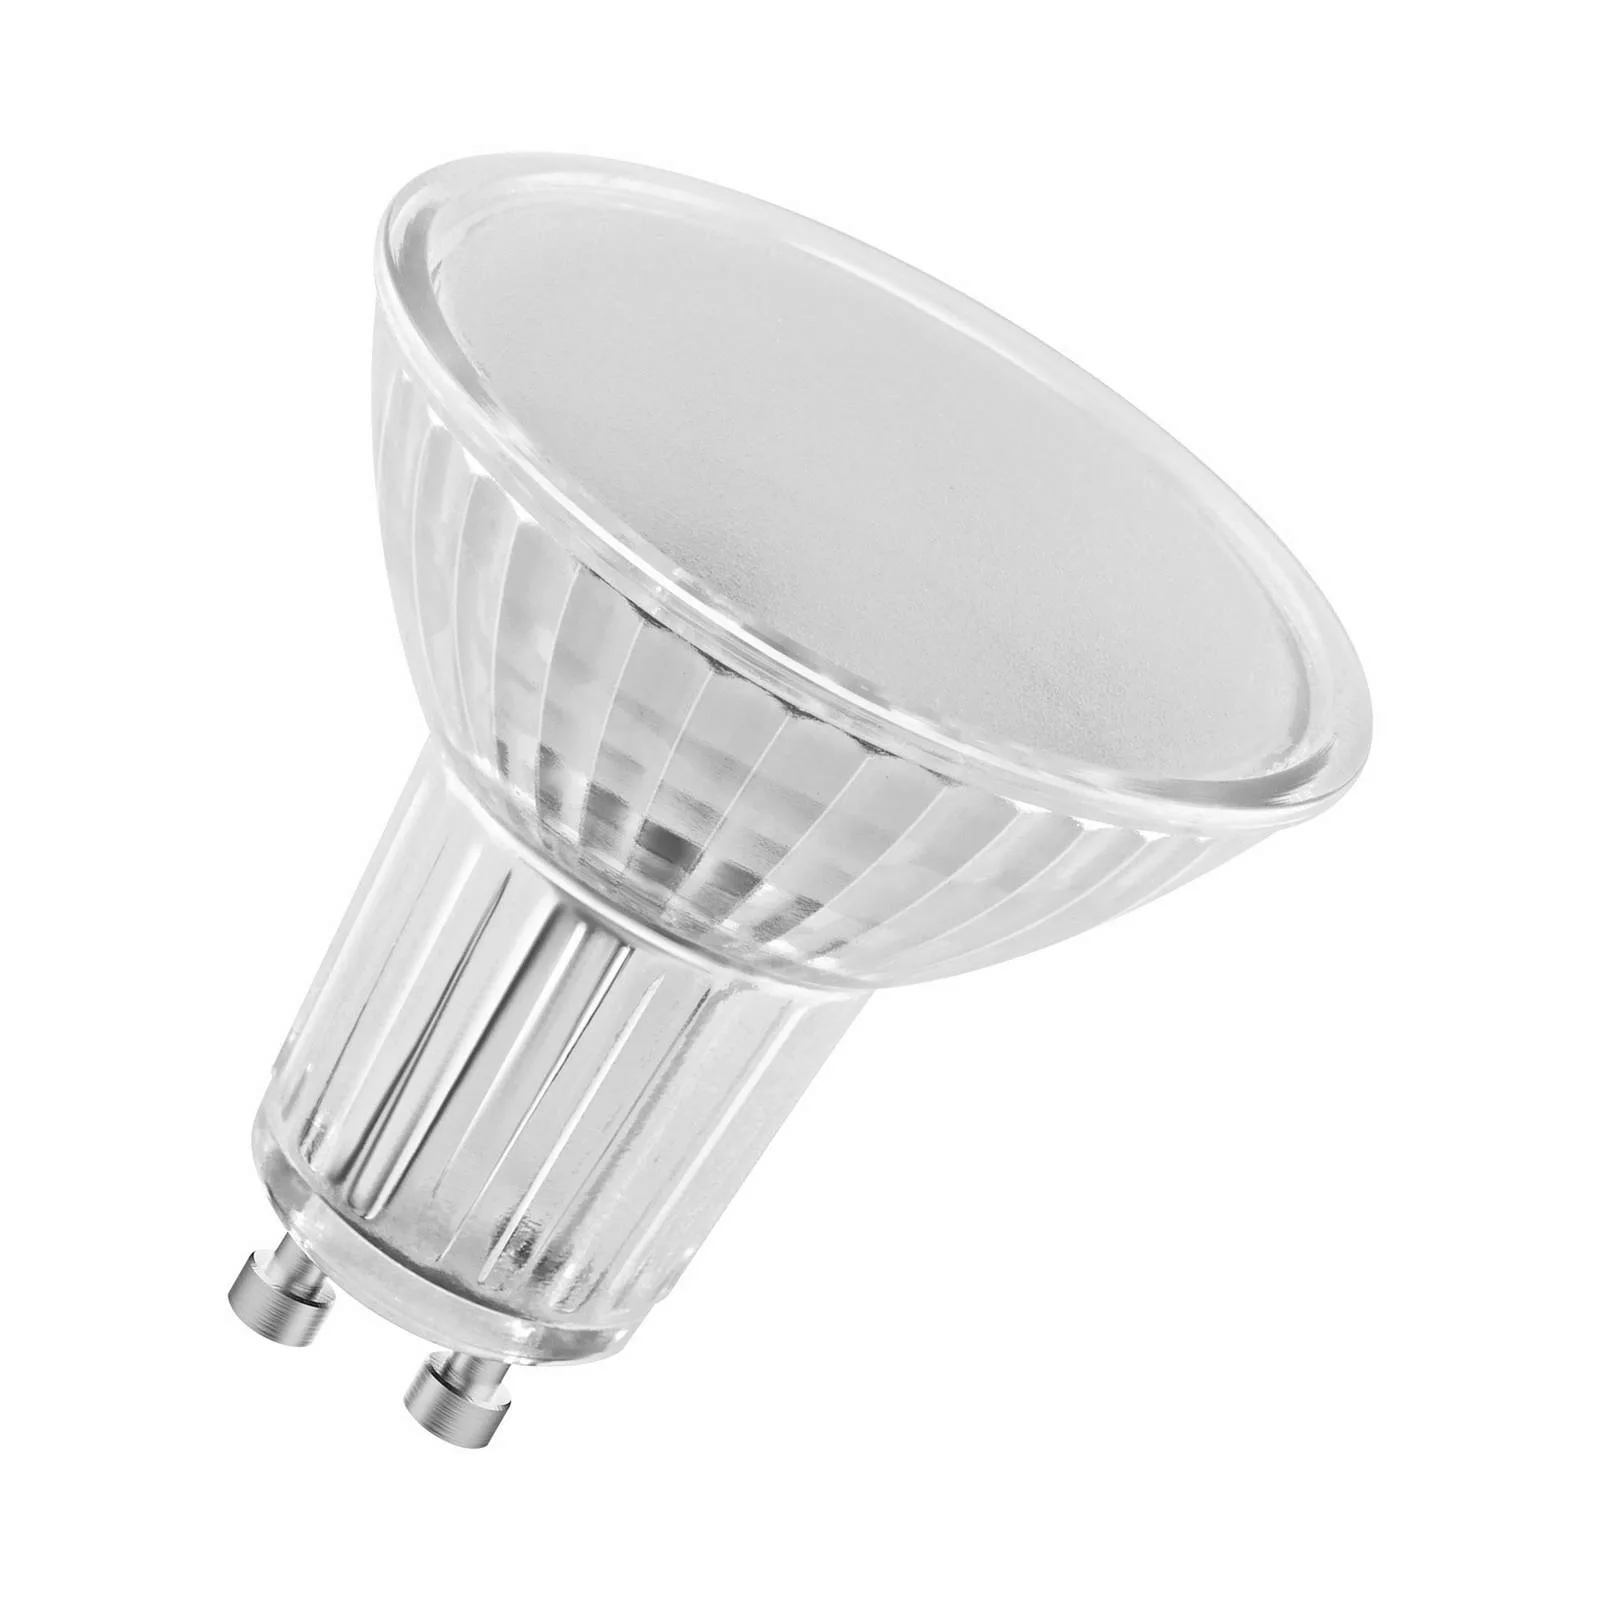 Osram LED Lampe ersetzt 30W Gu10 Reflektor - Par16 in Transparent 4,3W 350l günstig online kaufen